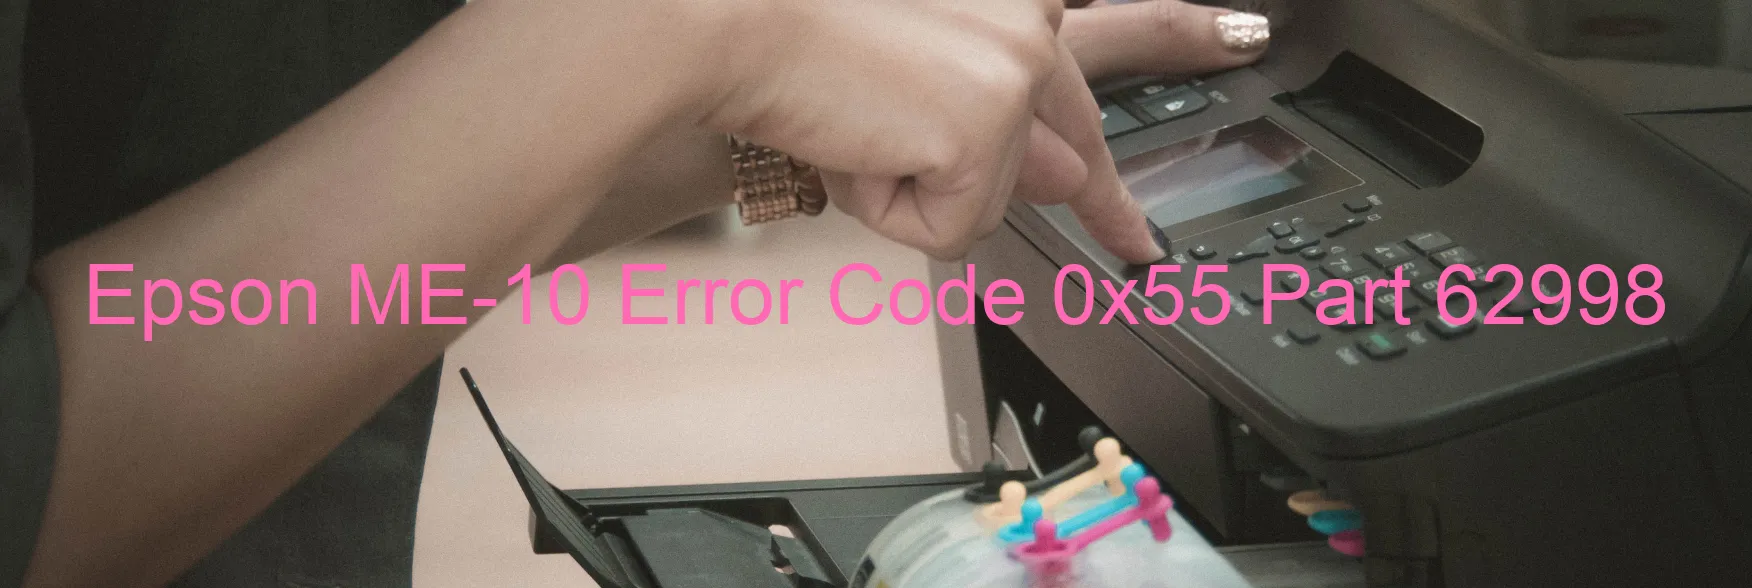 Epson ME-10 Error Code 0x55 Part 62998